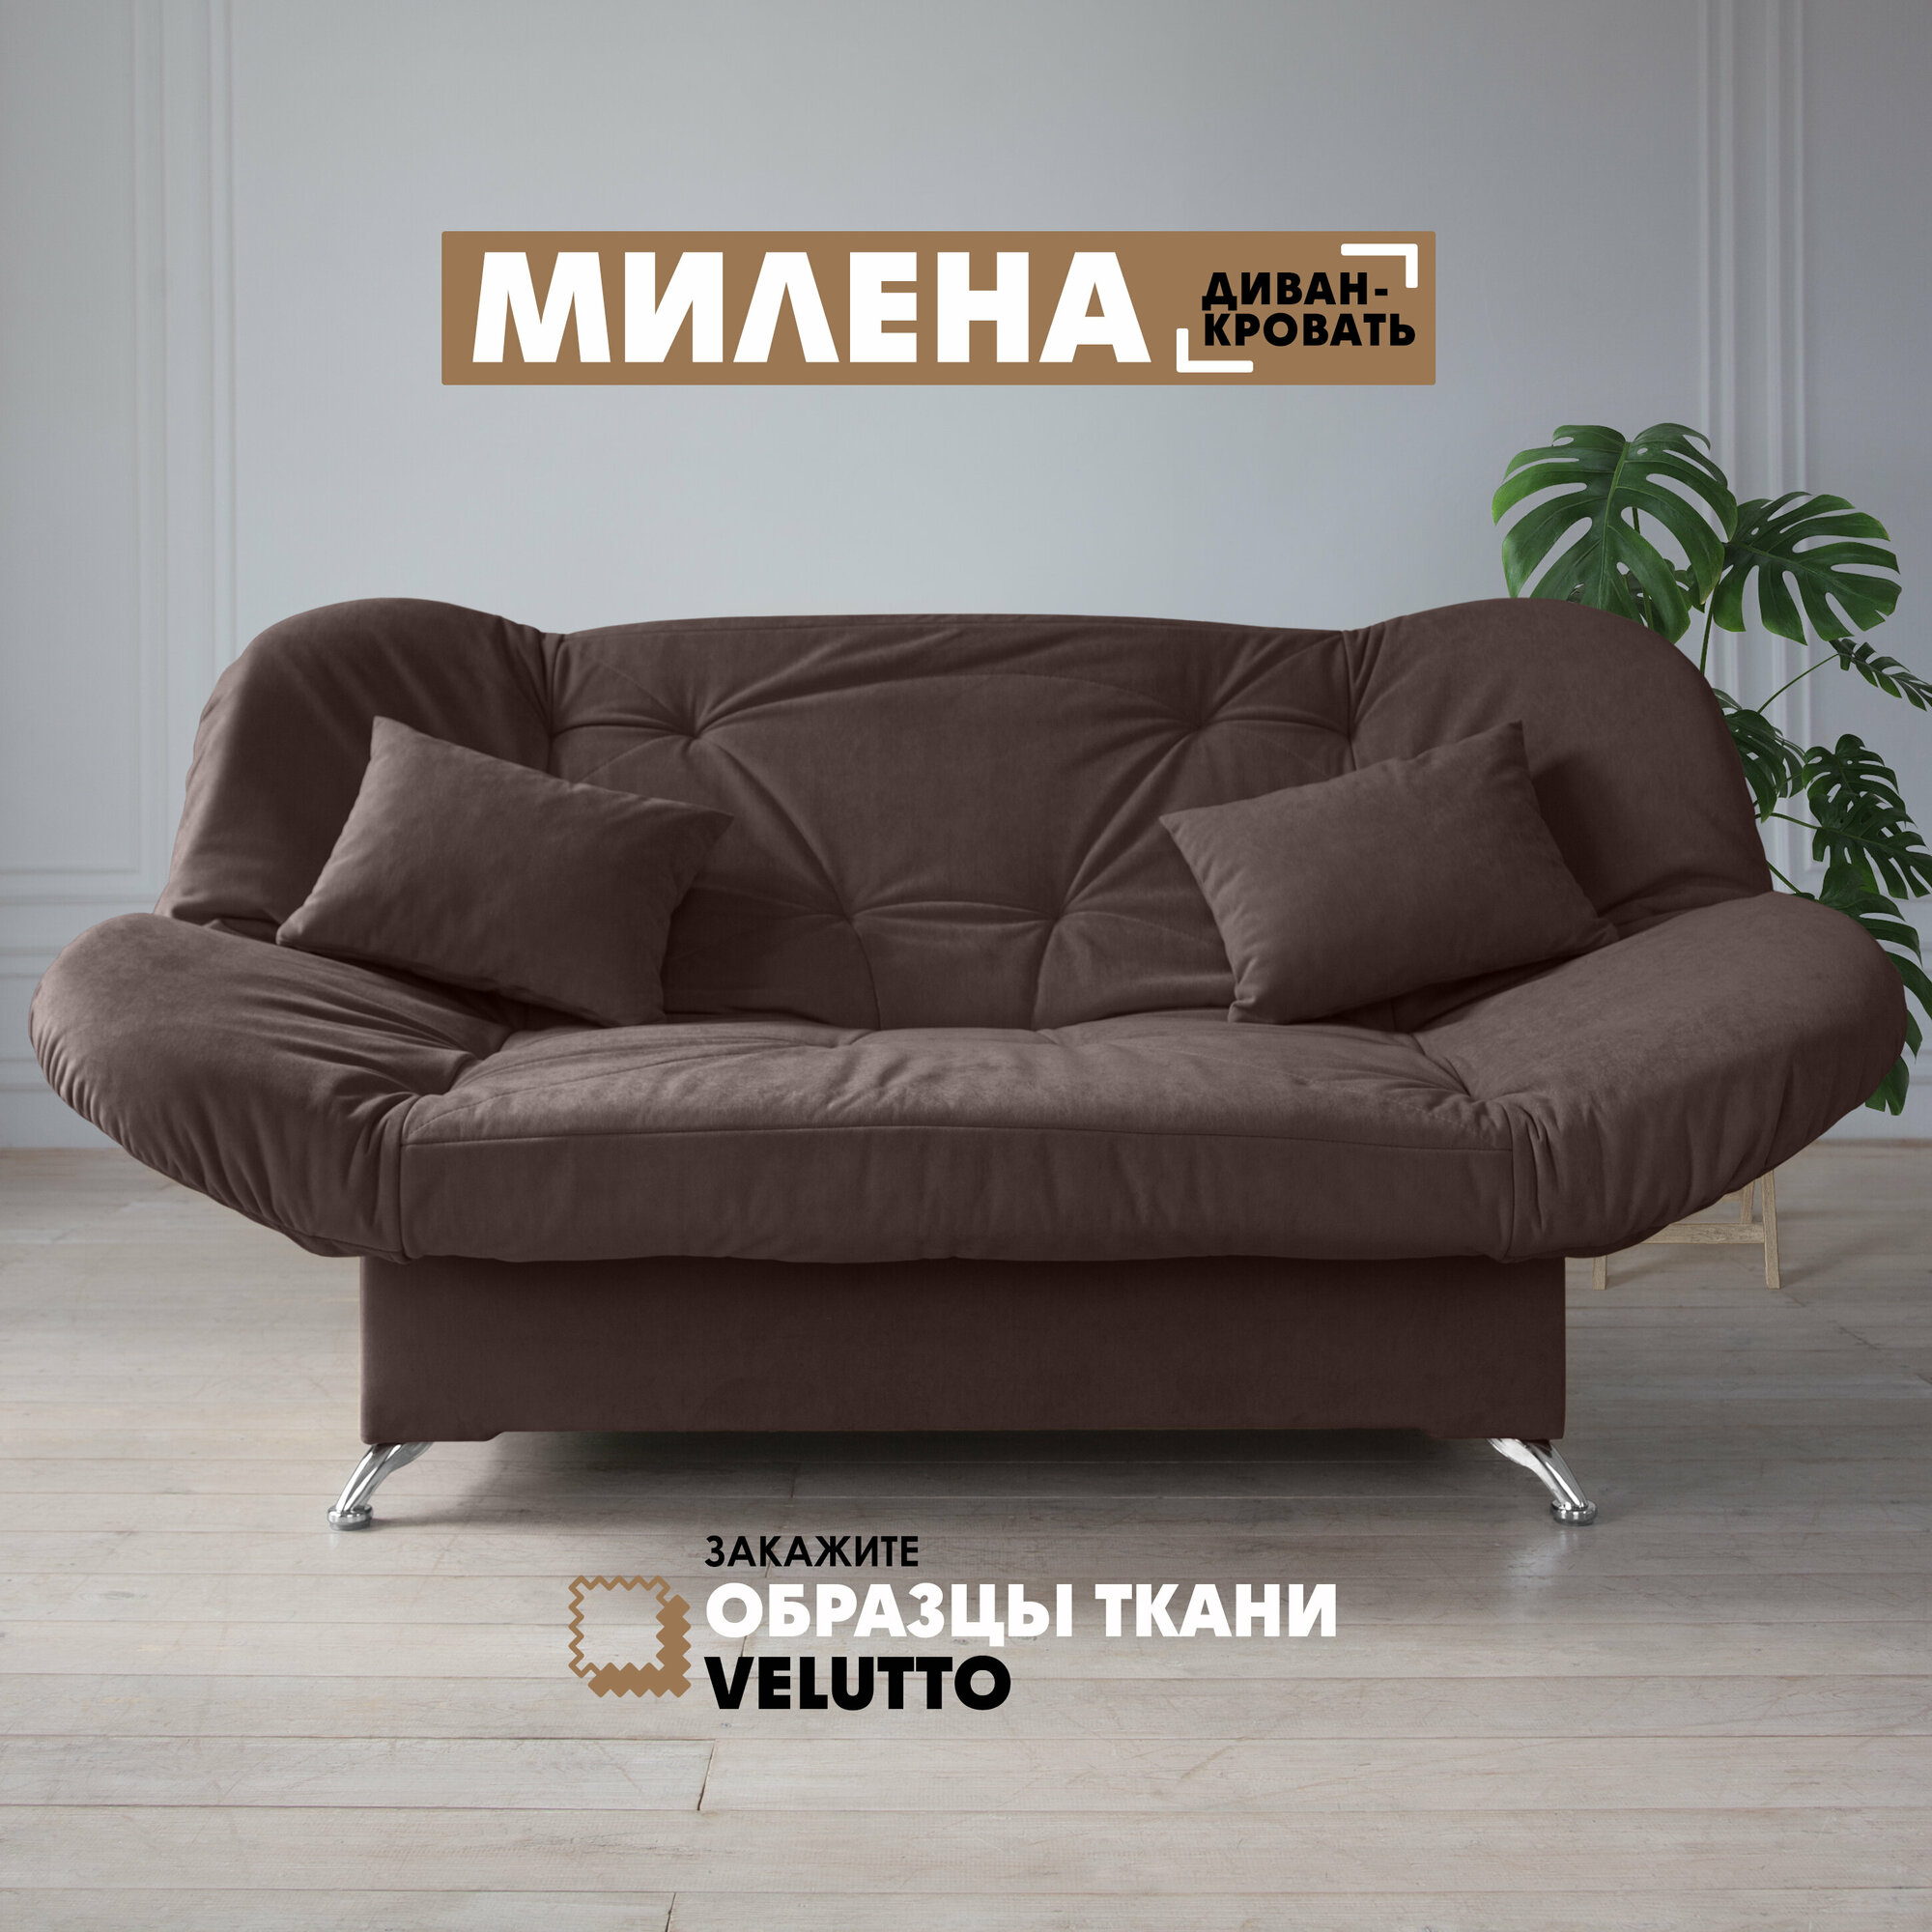 Прямой диван "Милена" Velutto 36